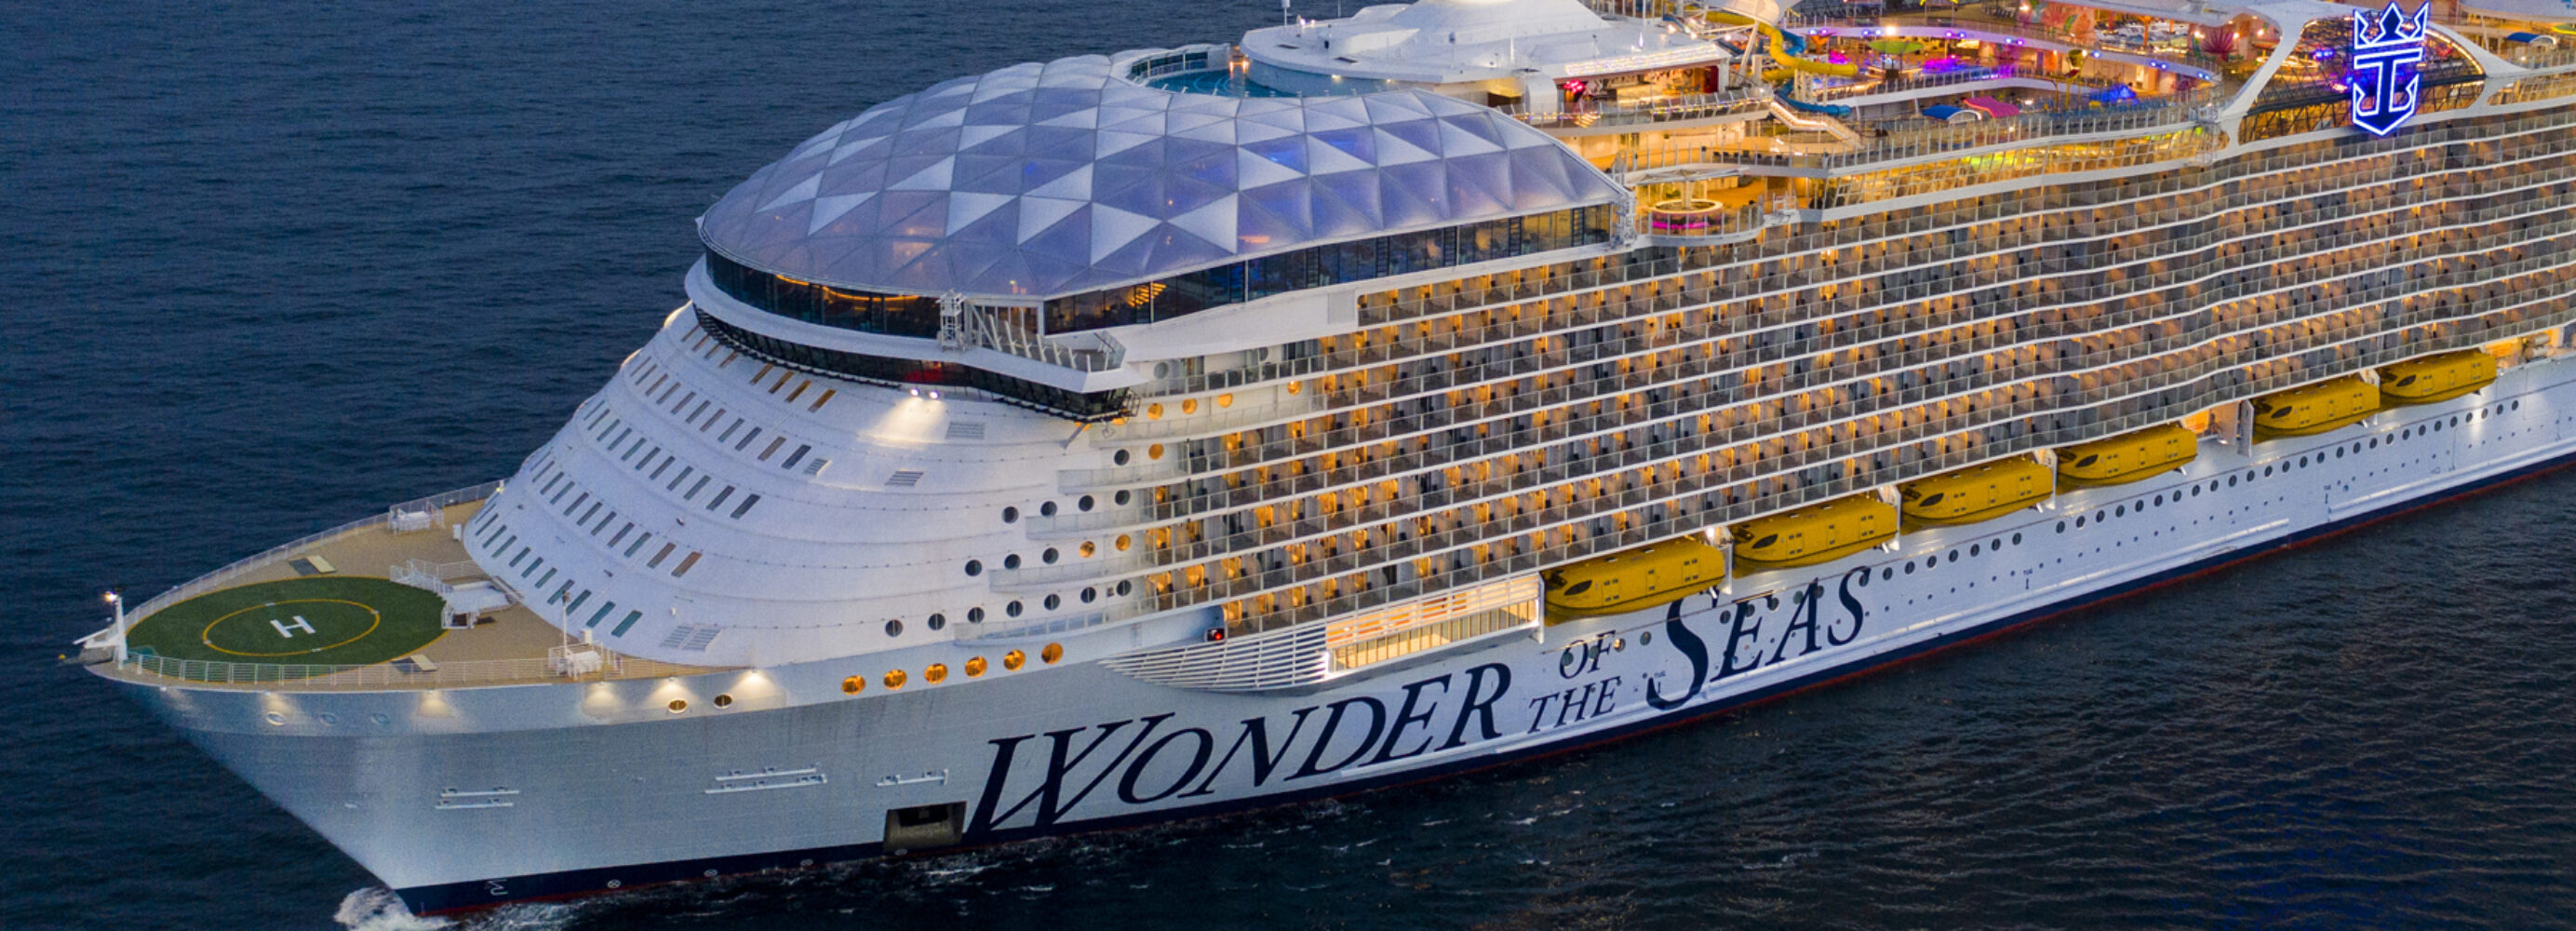 Wonder of the Seas